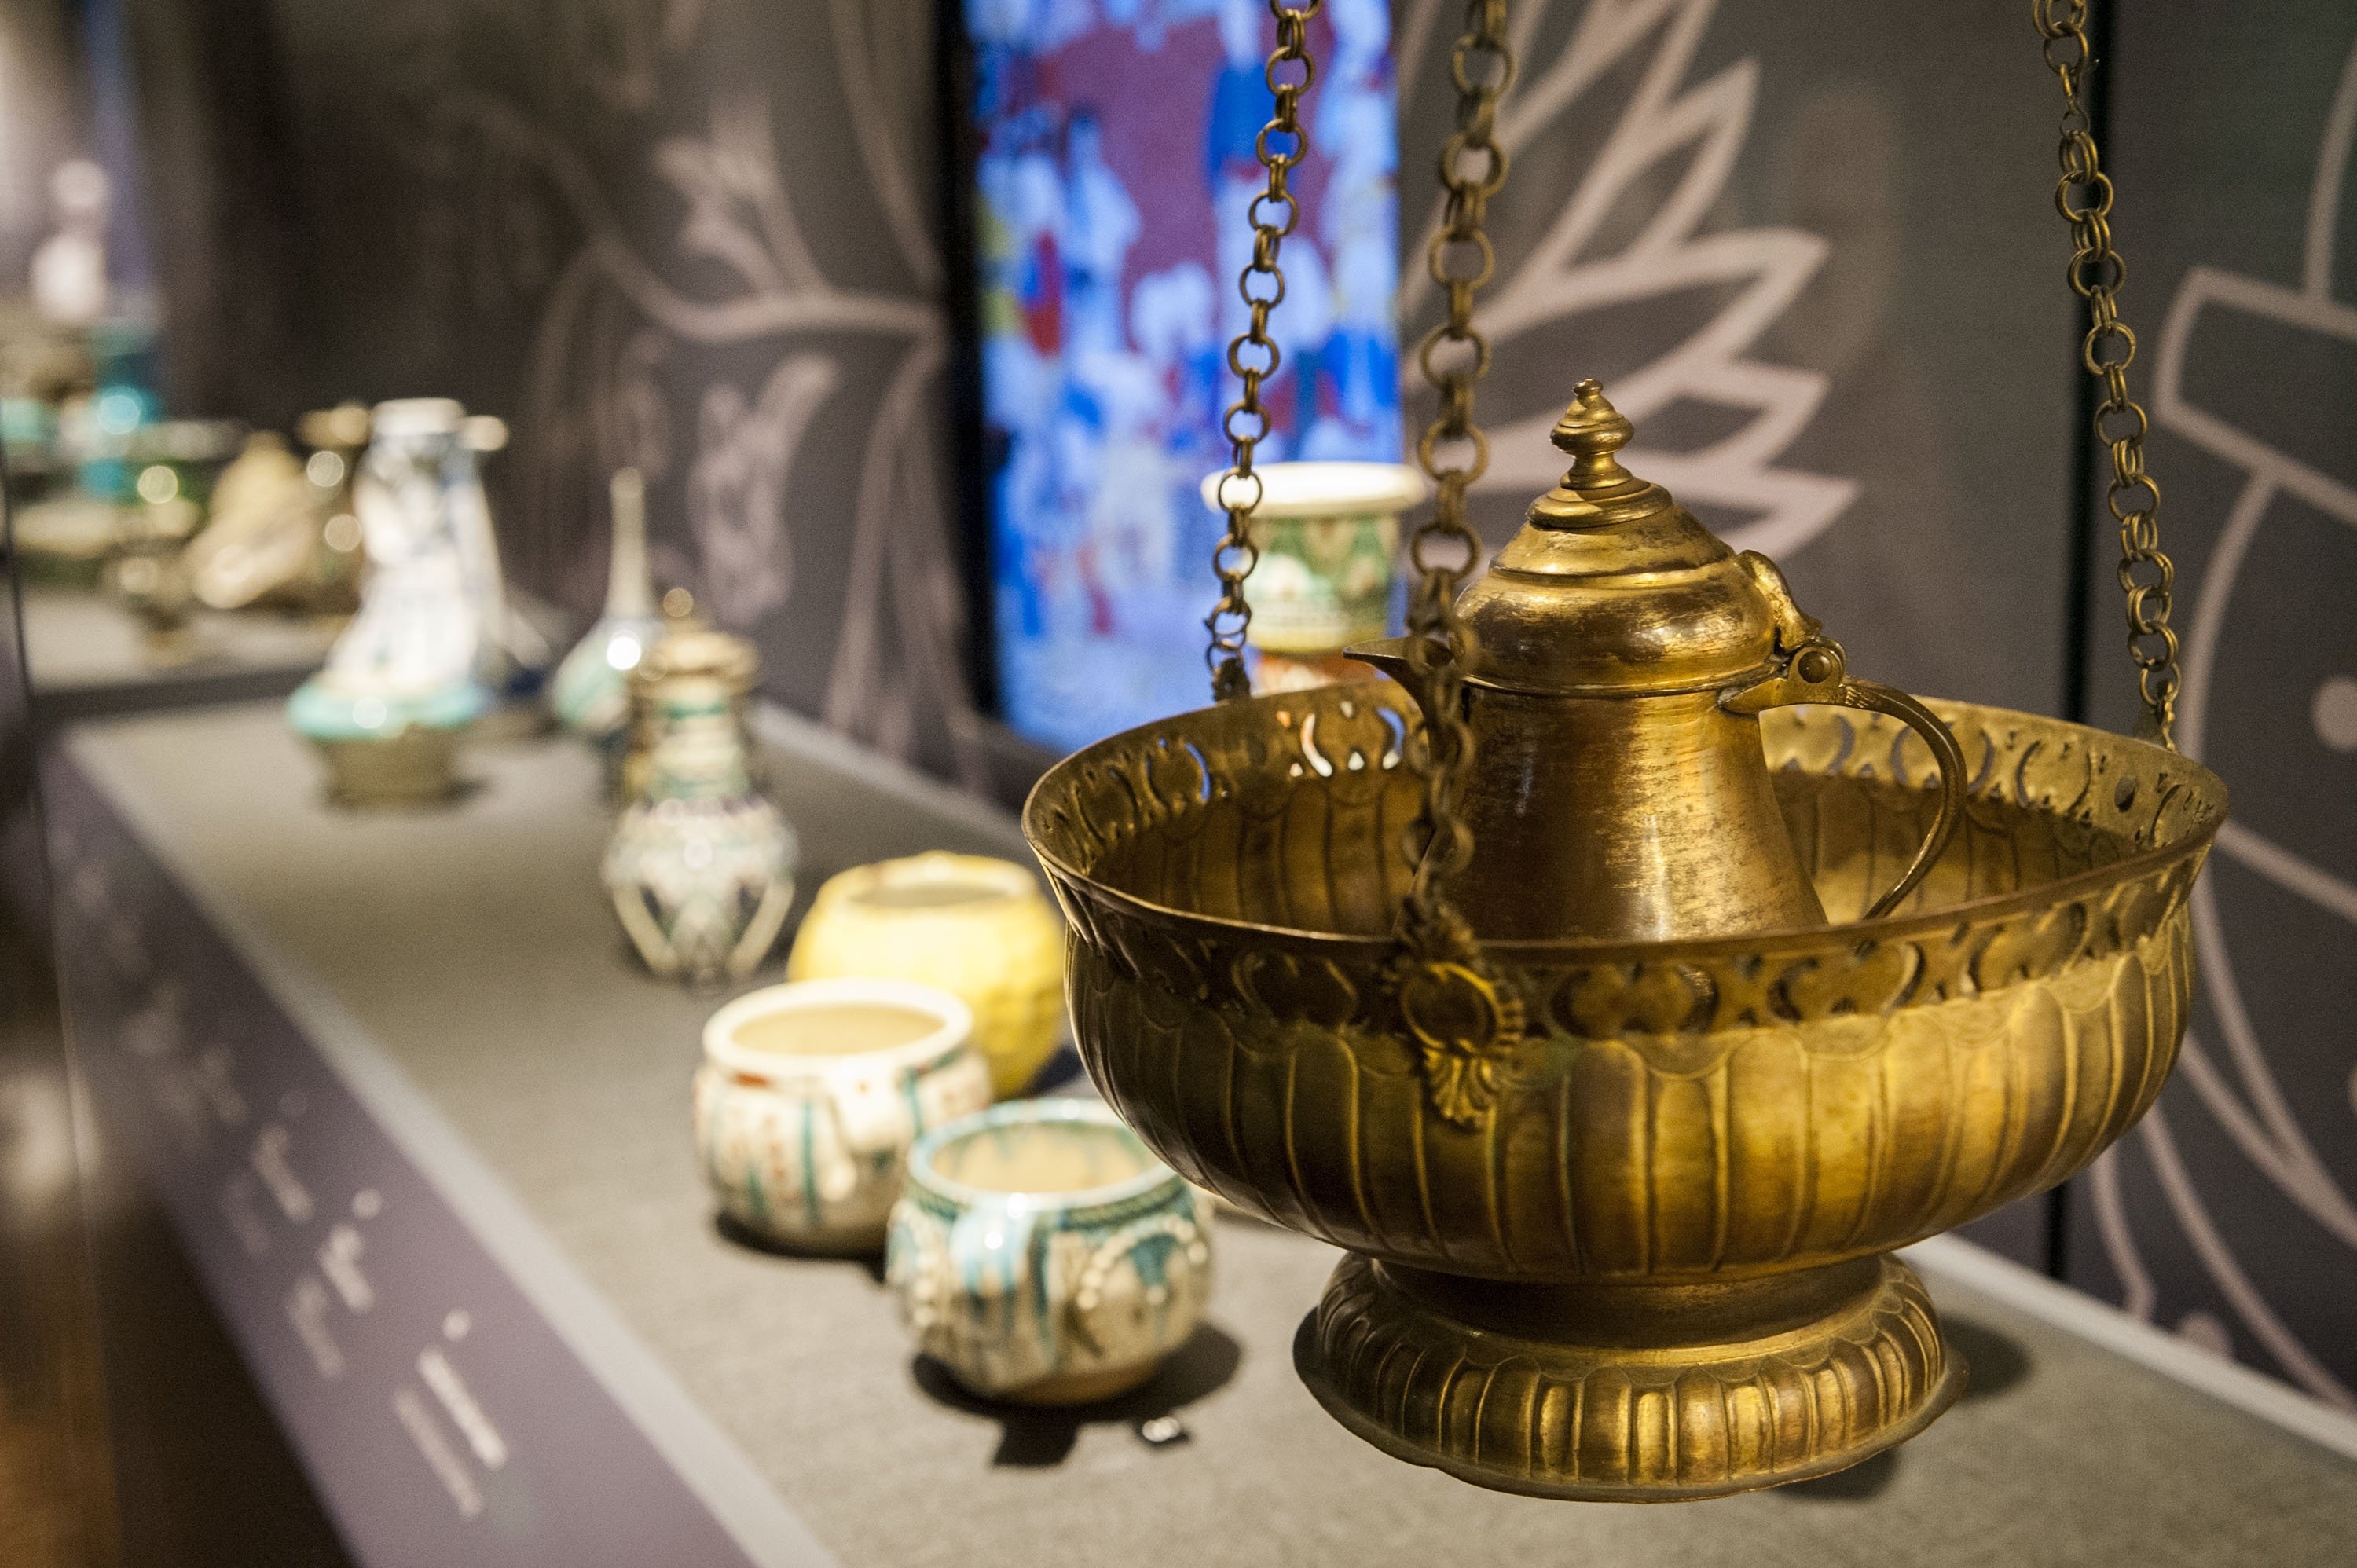 In the “Coffee Break” exhibition, teachers will explore the coffee culture of the Ottoman Empire. (Courtesy of Pera Museum)